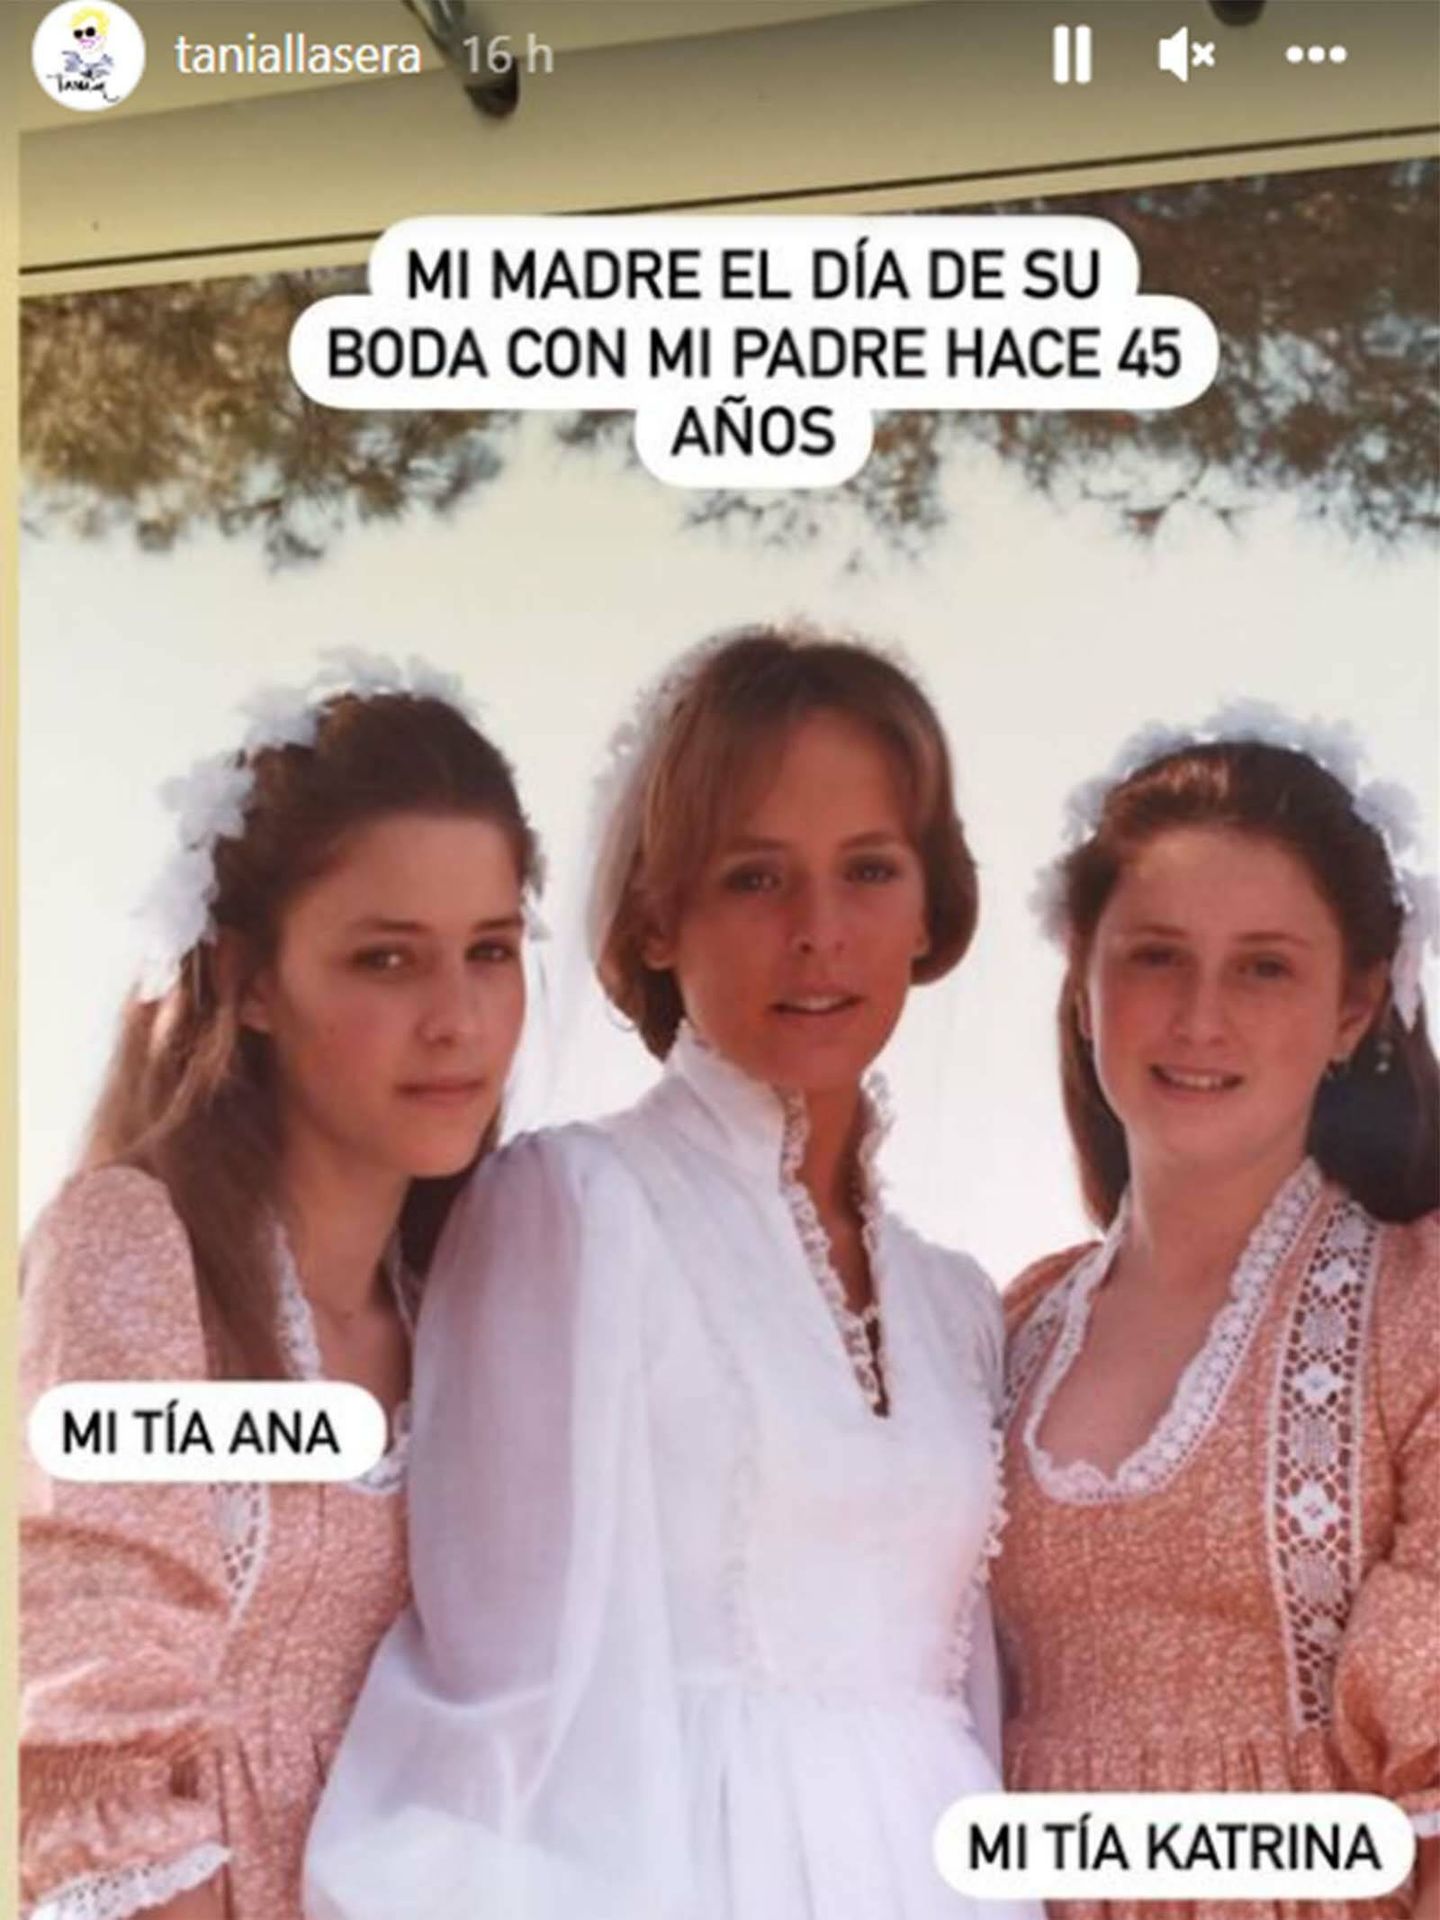 La imagen que demuestra el increíble parecido entre Tania Llasera y su madre. (Instagram/@taniallasera)